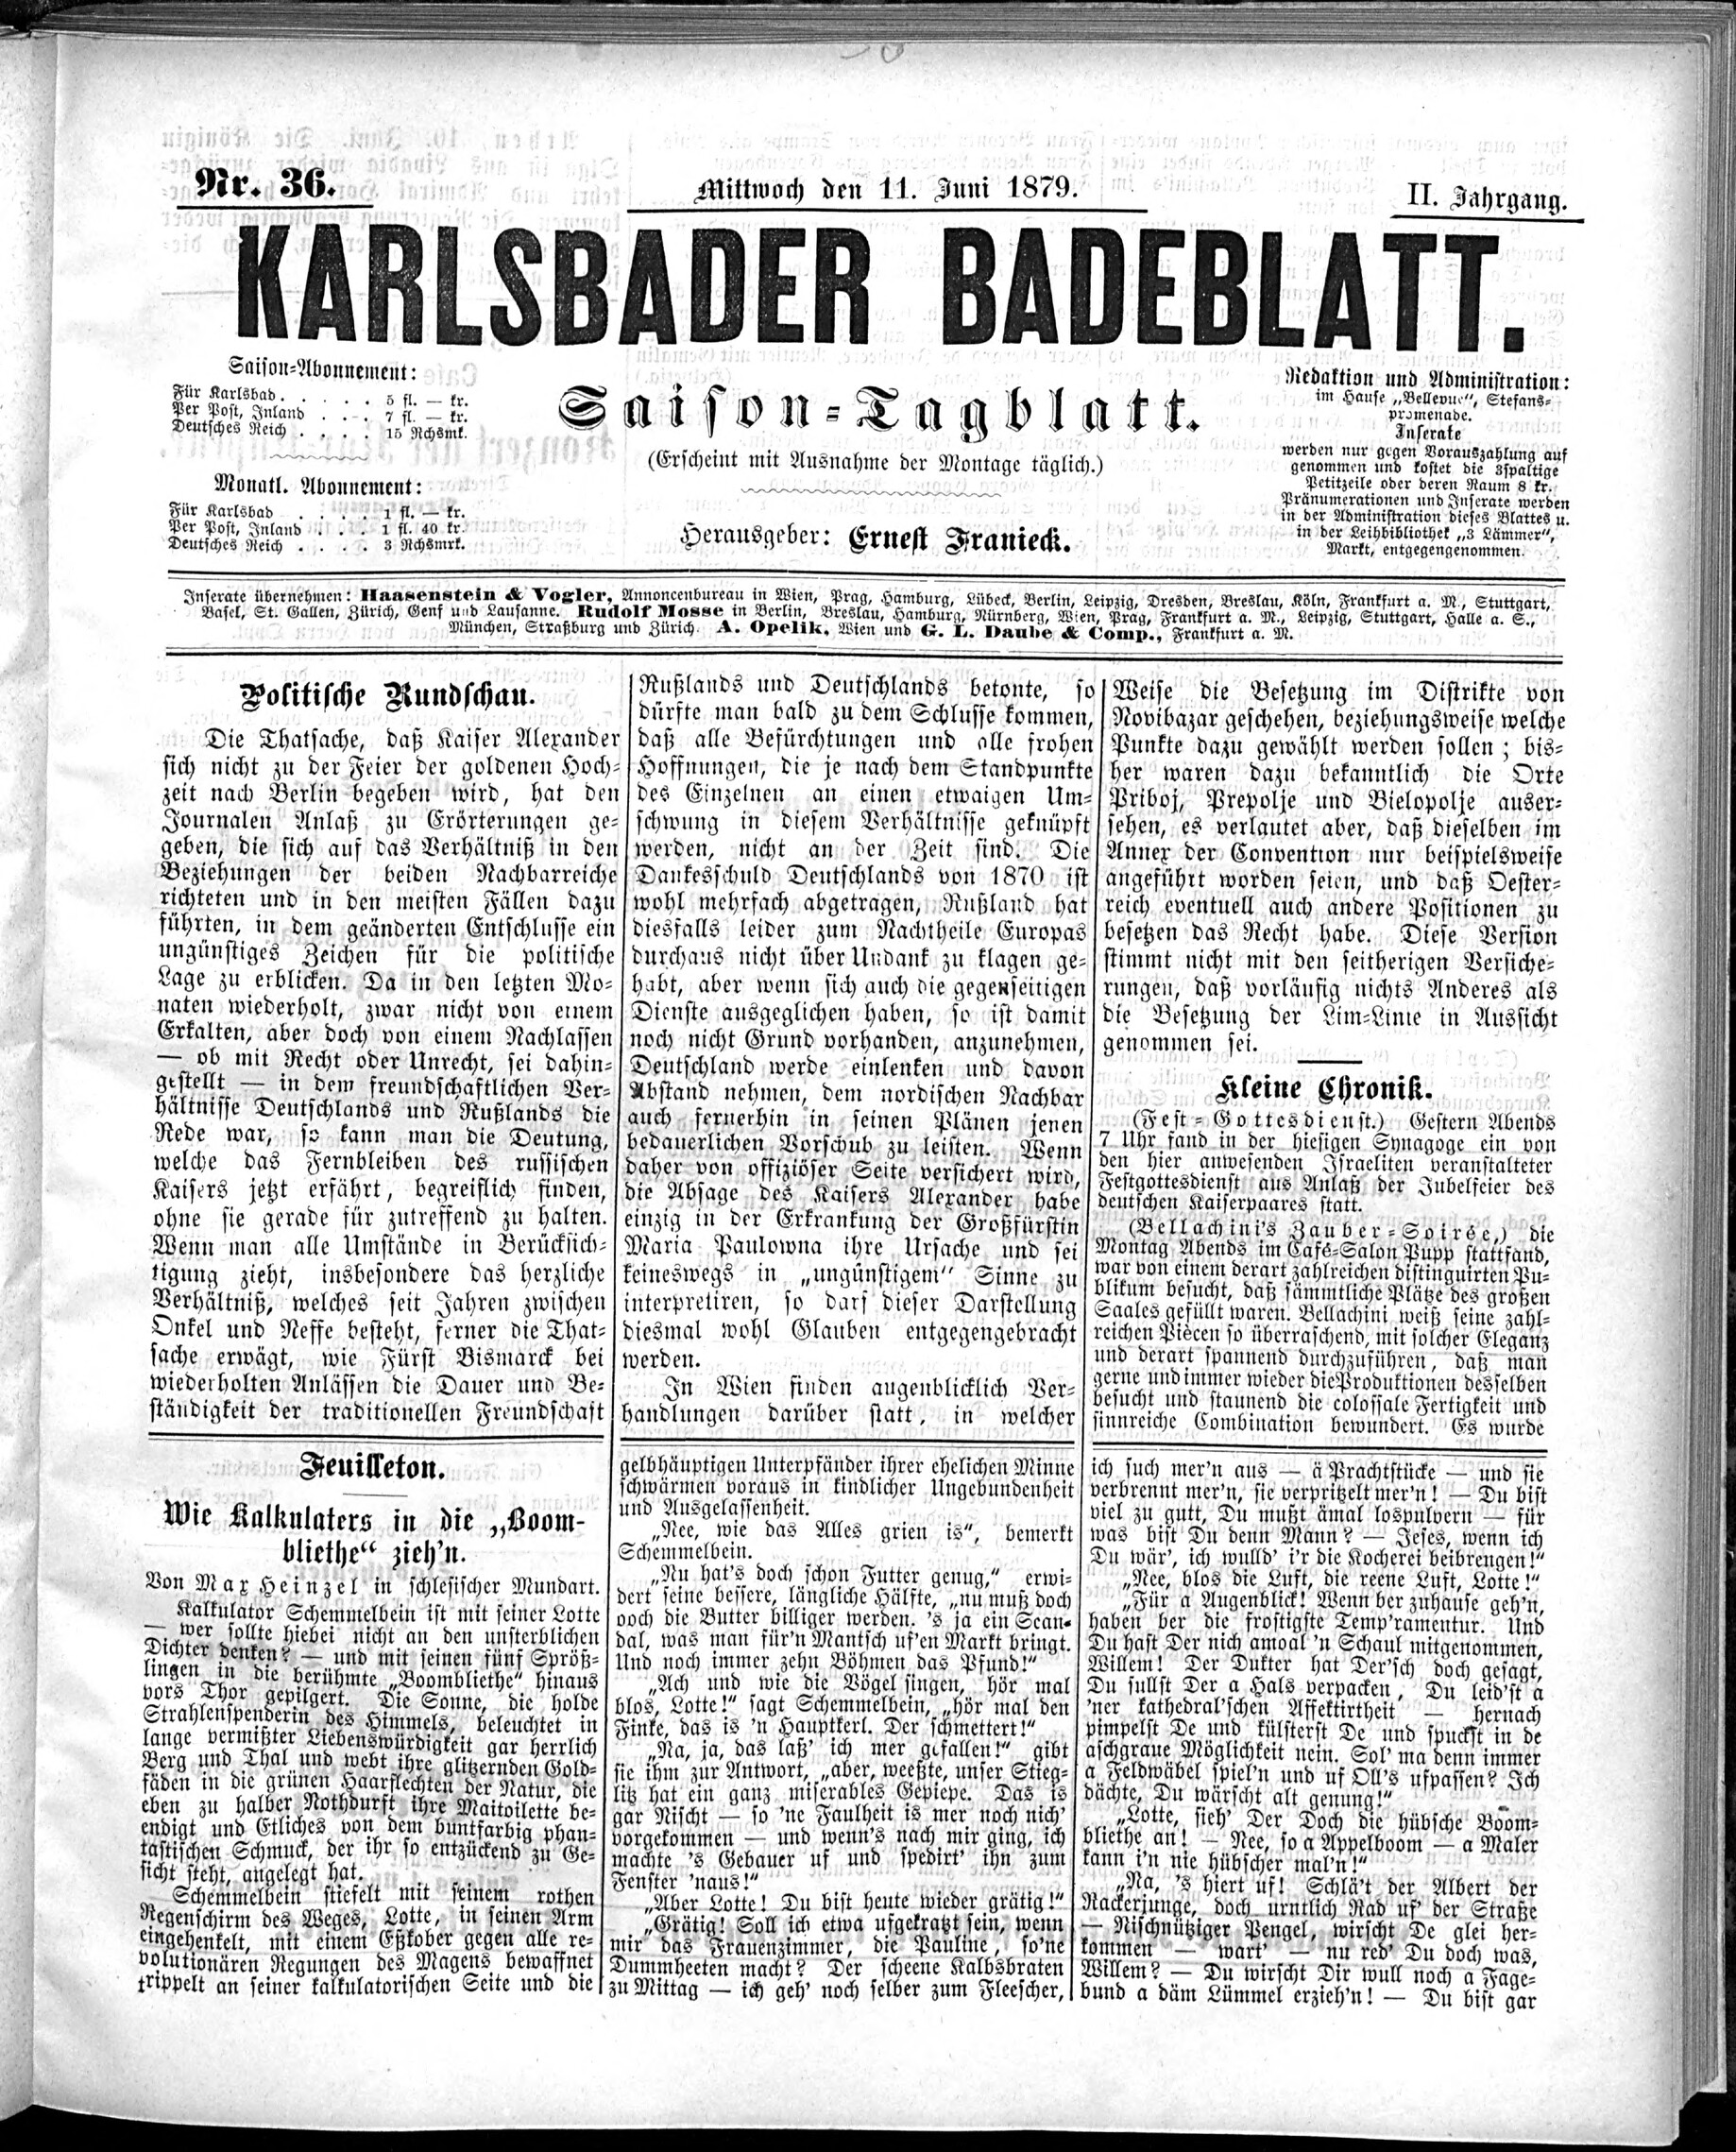 1. karlsbader-badeblatt-1879-06-11-n36_0765